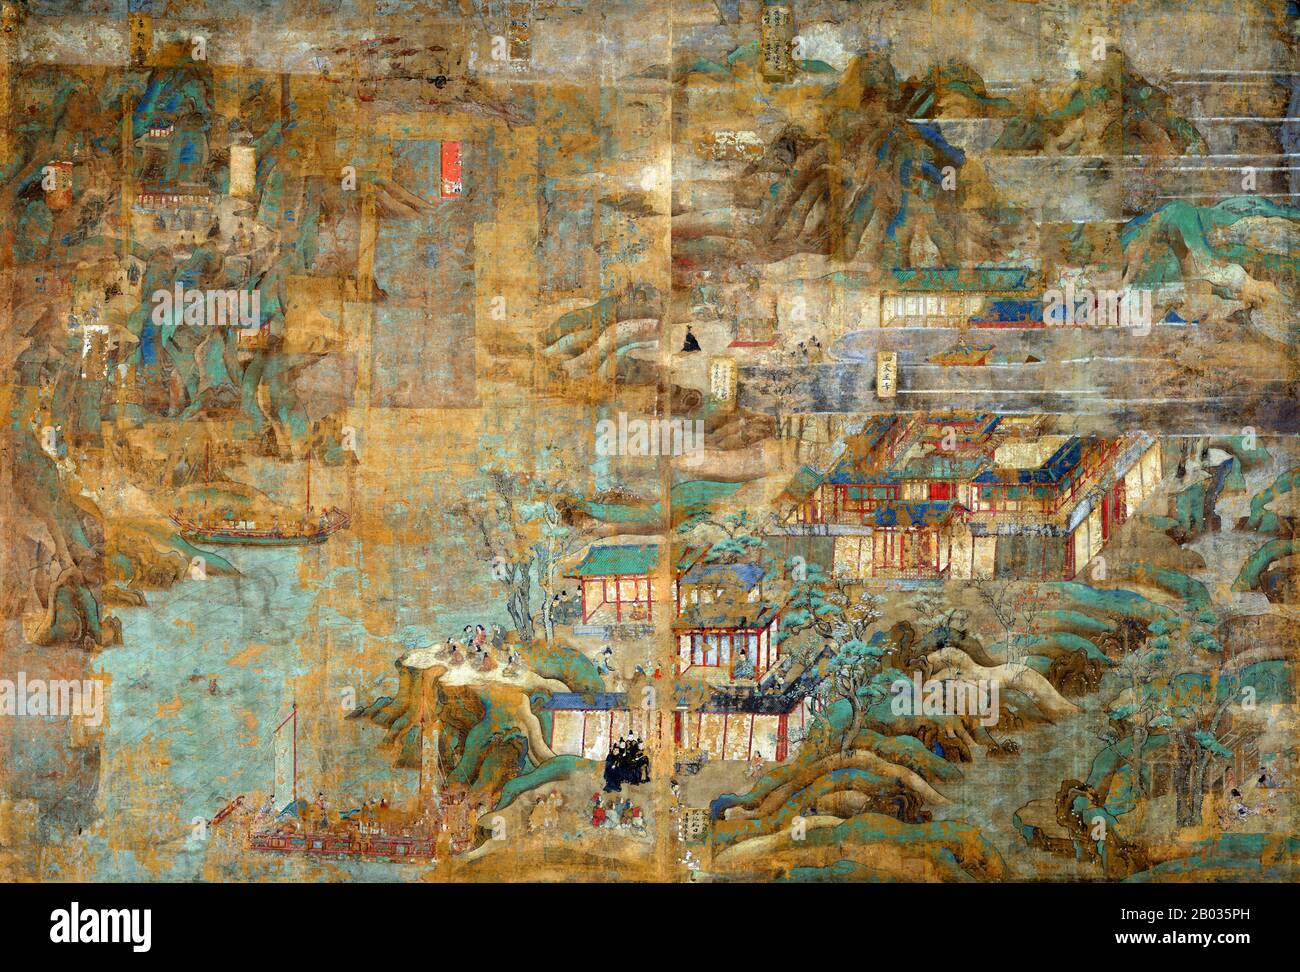 Dieser Satz von Gemälden ist die älteste und größte illustrierte Biographie des Prinzregenten Shotoku (574-622). Es zeigt Orte und Ereignisse im Zusammenhang mit der traditionellen Darstellung seines Lebens, die aus der in der Nara-Zeit (710-794) begonnenen Fürstverehrung herrühren. Diese Gemälde befanden sich ursprünglich an festen Türen, die die Bilderhalle im östlichen Viertel des Horyu-JI-Tempels schmückten. Sie wurden in der Edo-Zeit (1615-1868) als freistehende Bildschirme neu aufgestellt und in neuerer Zeit wieder auf zehn Tafeln angebracht. Aufzeichnungen sagen uns, dass Hata no Chitei, eine Künstlerin aus der Provinz Settsu (Presen Stockfoto